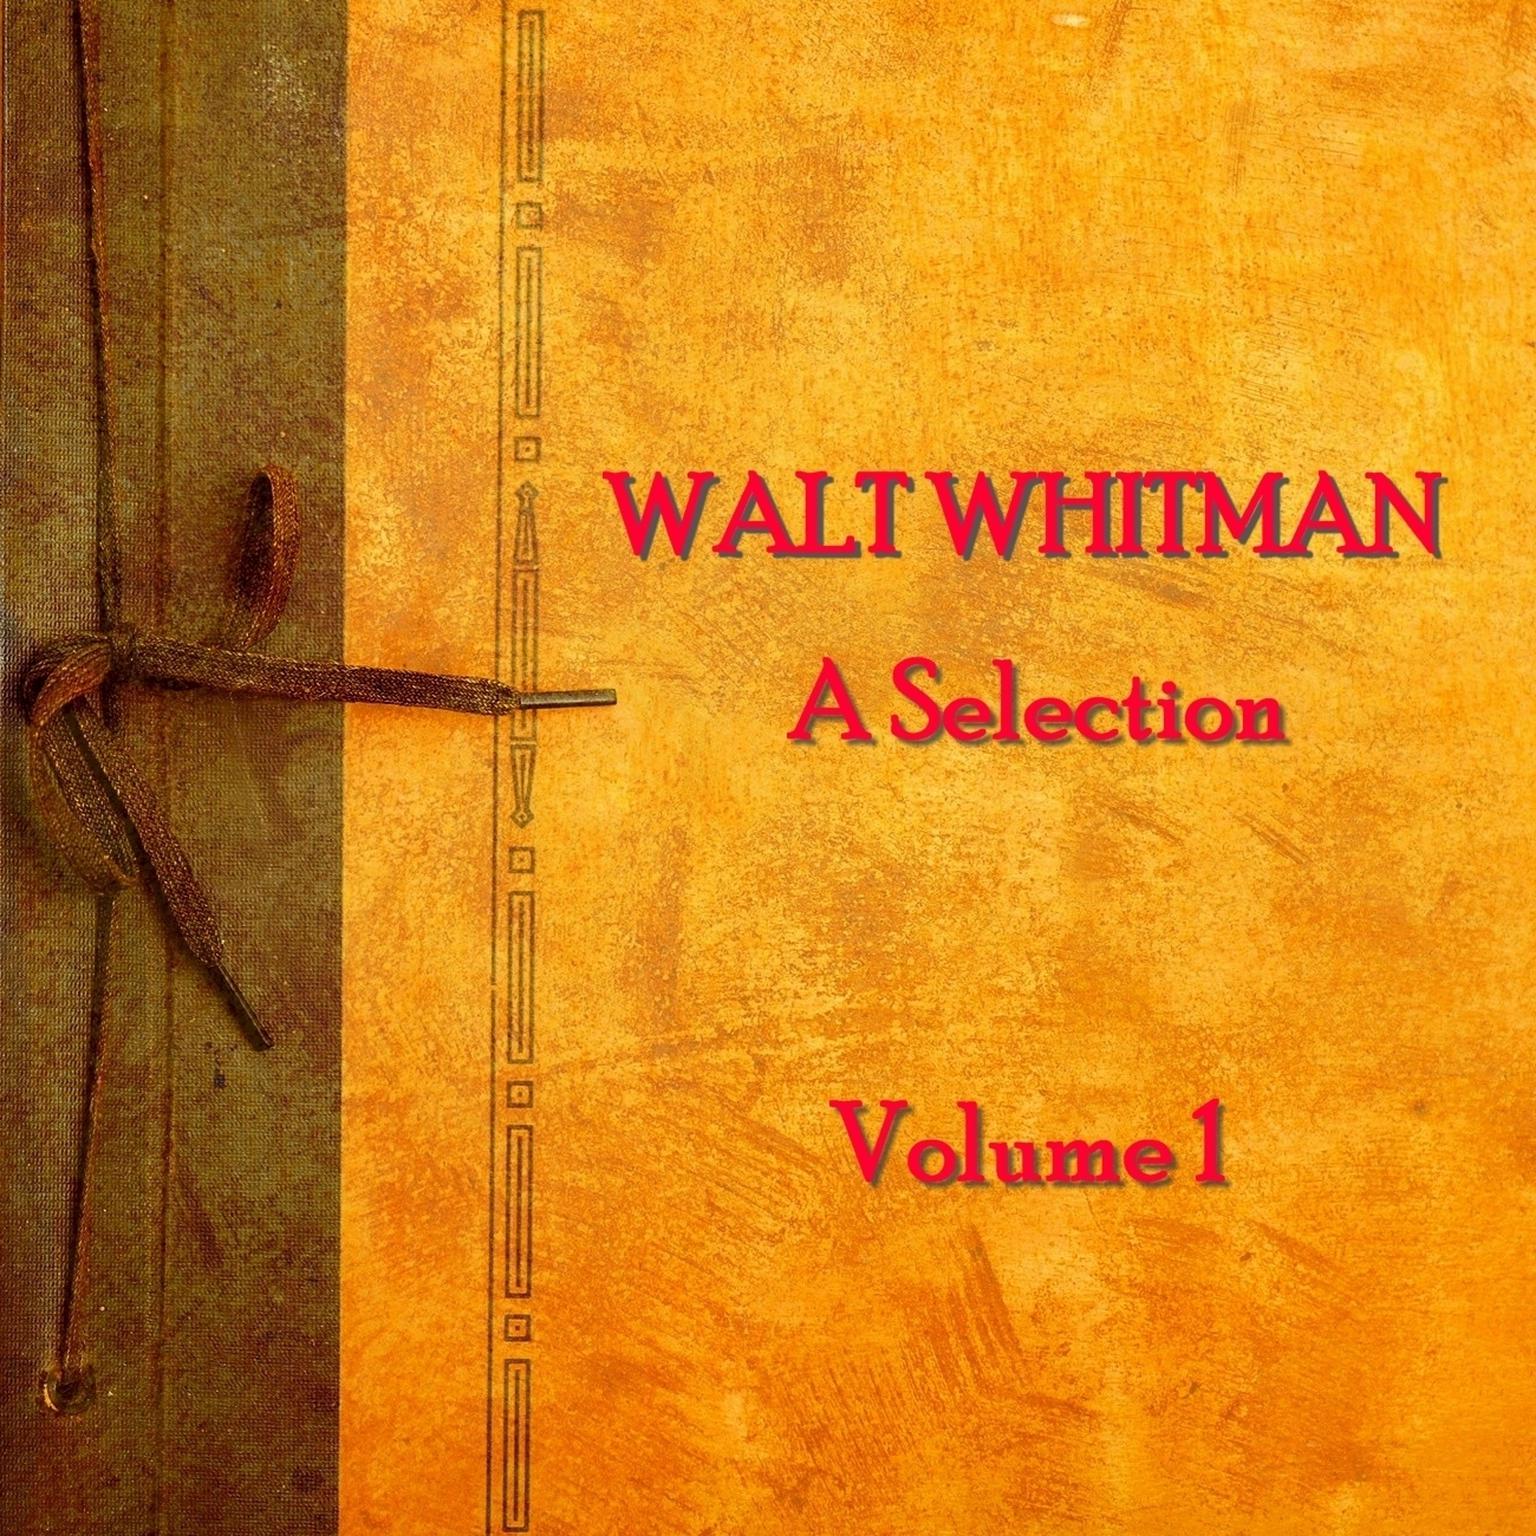 Walt Whitman: A Selection, Vol. 1 Audiobook, by Walt Whitman